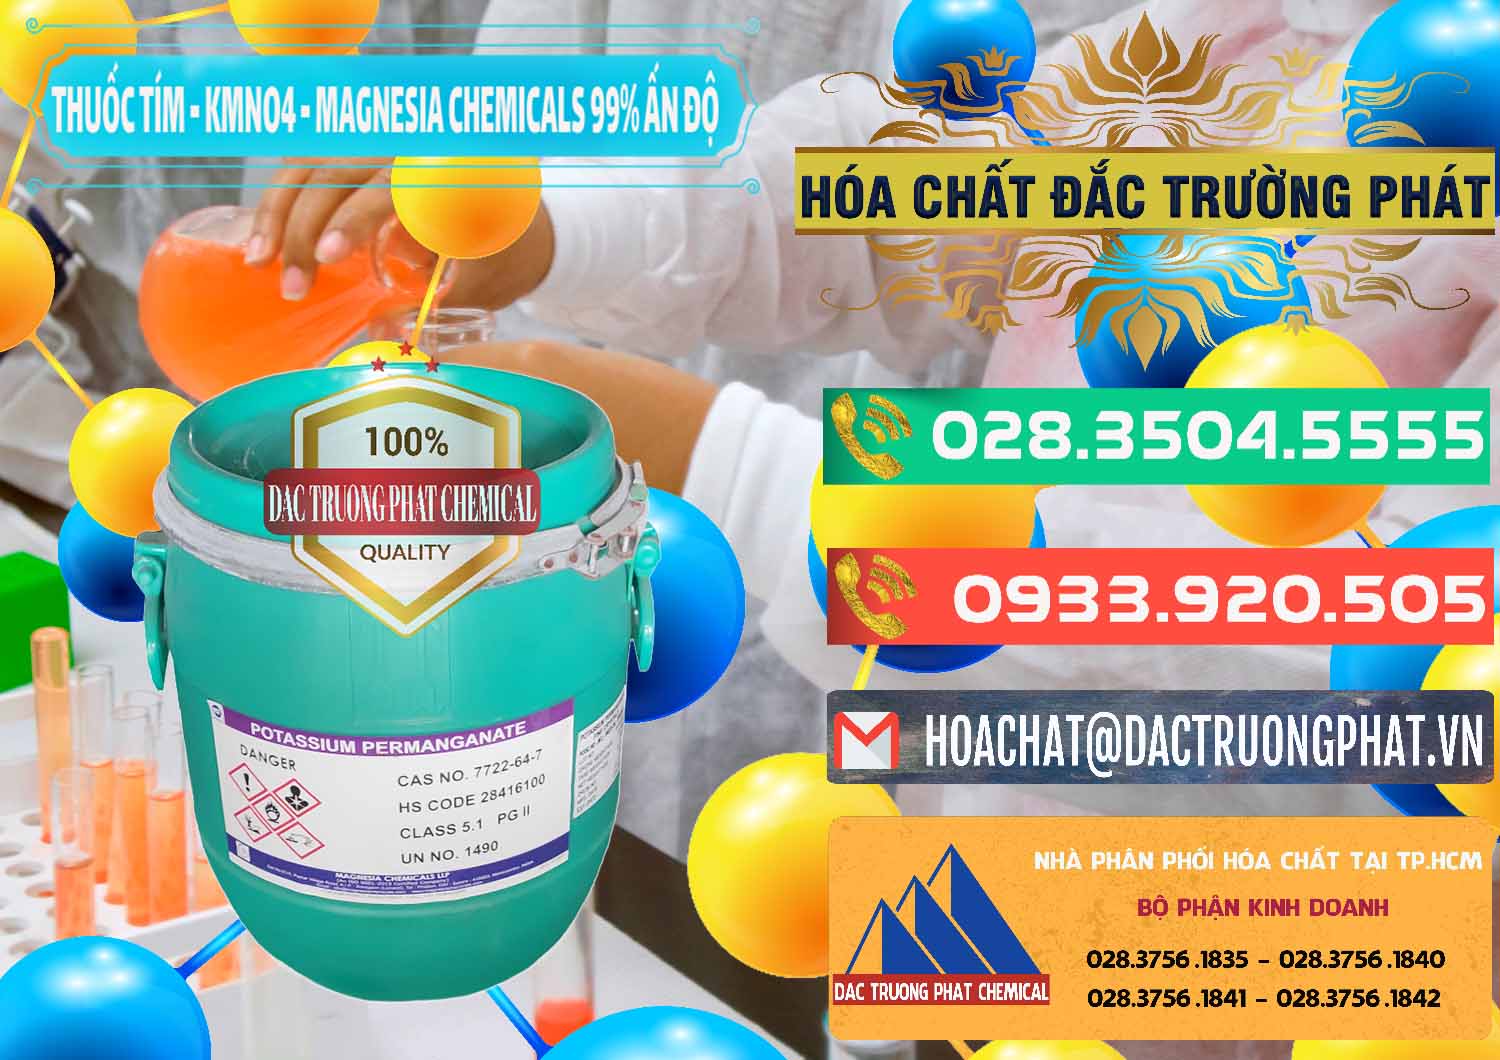 Công ty chuyên cung cấp & bán Thuốc Tím - KMNO4 Magnesia Chemicals 99% Ấn Độ India - 0251 - Cty phân phối và kinh doanh hóa chất tại TP.HCM - congtyhoachat.com.vn